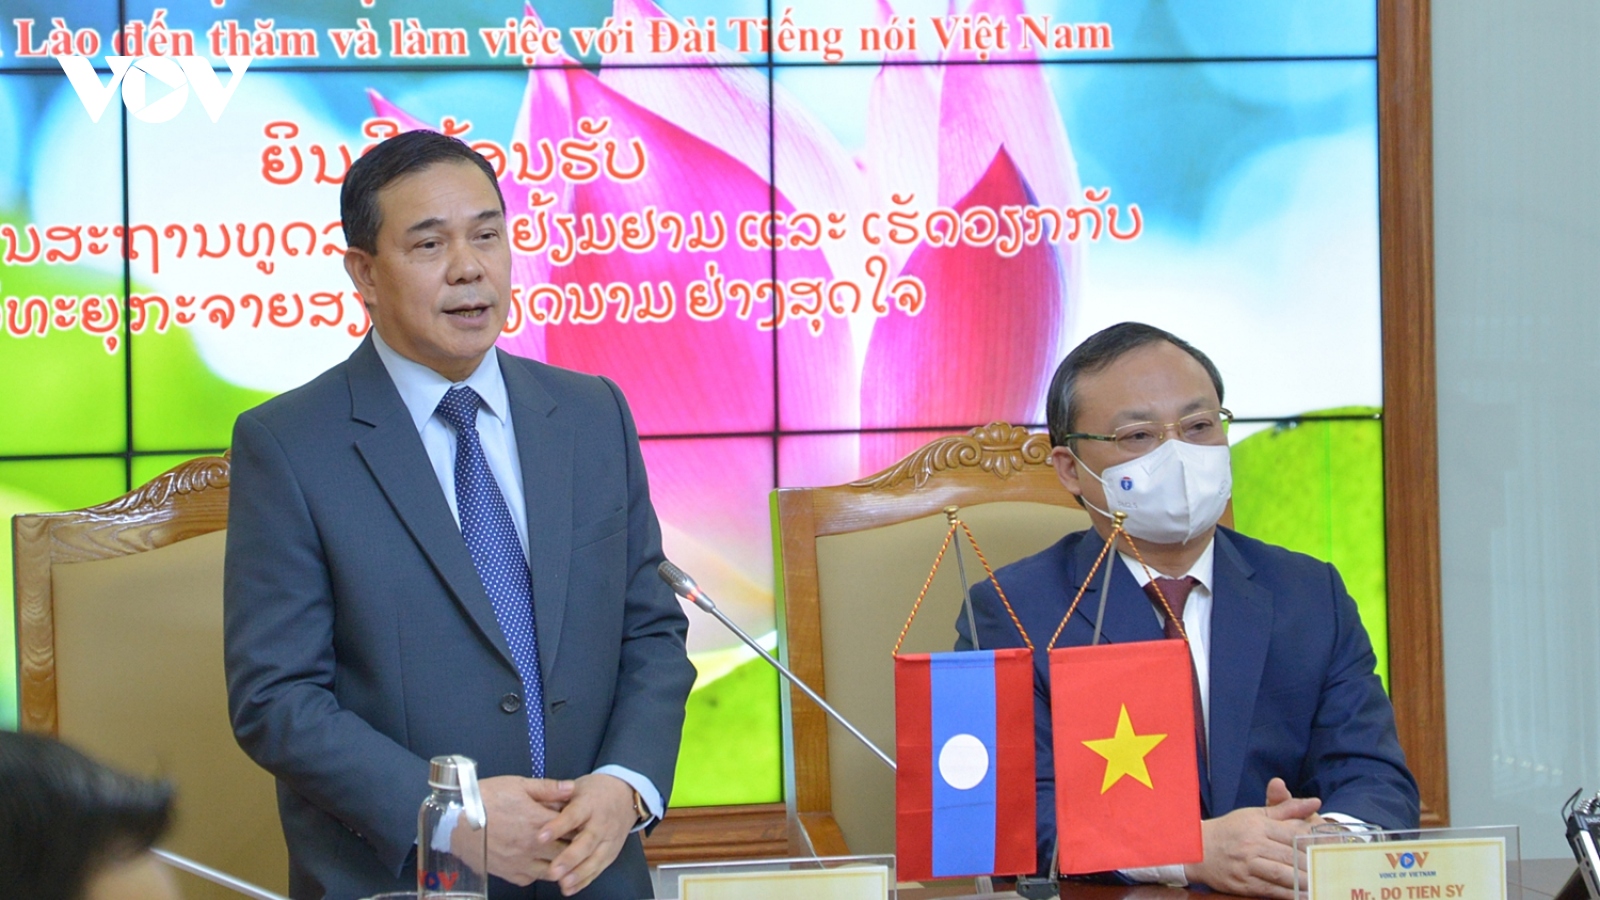 Đại sứ Lào tại Việt Nam đánh giá cao đóng góp của VOV cho quan hệ Việt-Lào